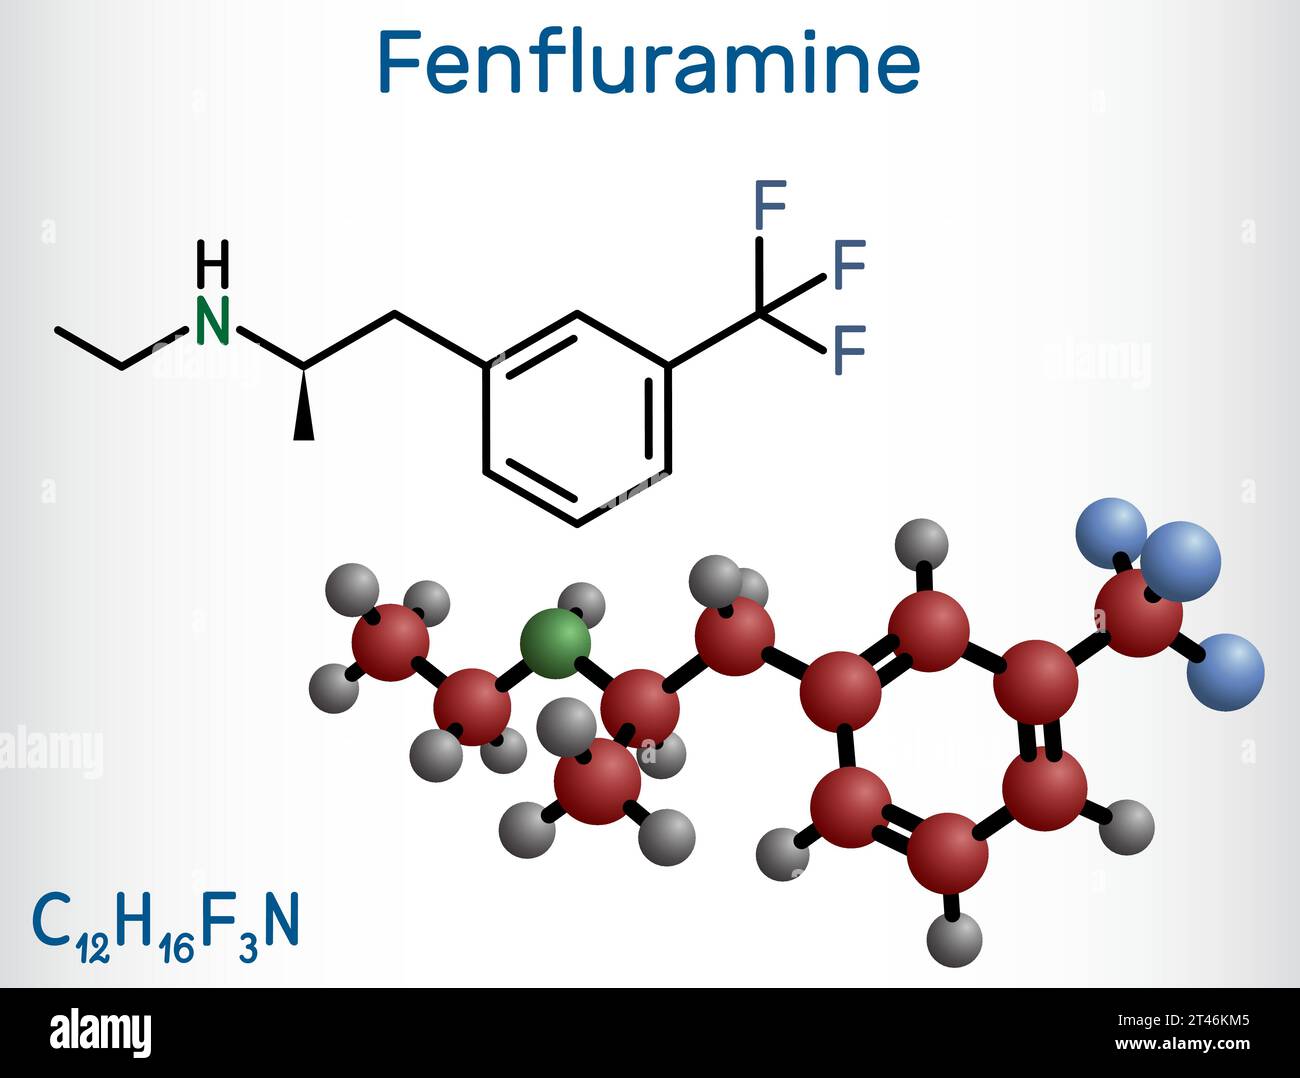 Fenfluramin-Arzneimittelmolekül. Es handelt sich um Phenethylamin, das als Appetitzügler verwendet wird. Strukturelle chemische Formel und Molekülmodell. Vektorabbildung Stock Vektor